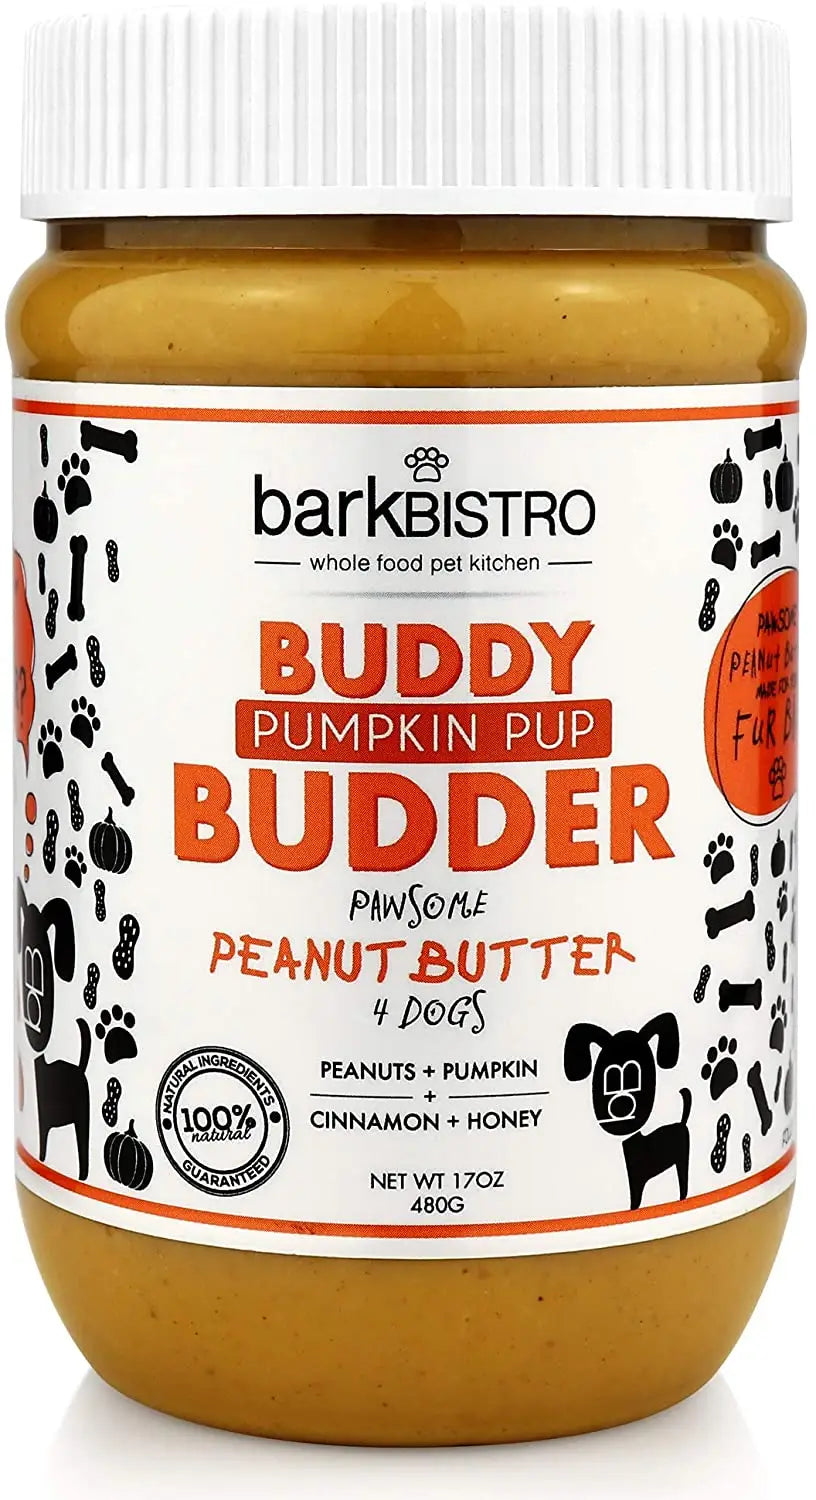 Dog Peanut Butter Pumpkin Pup Buddy Butter